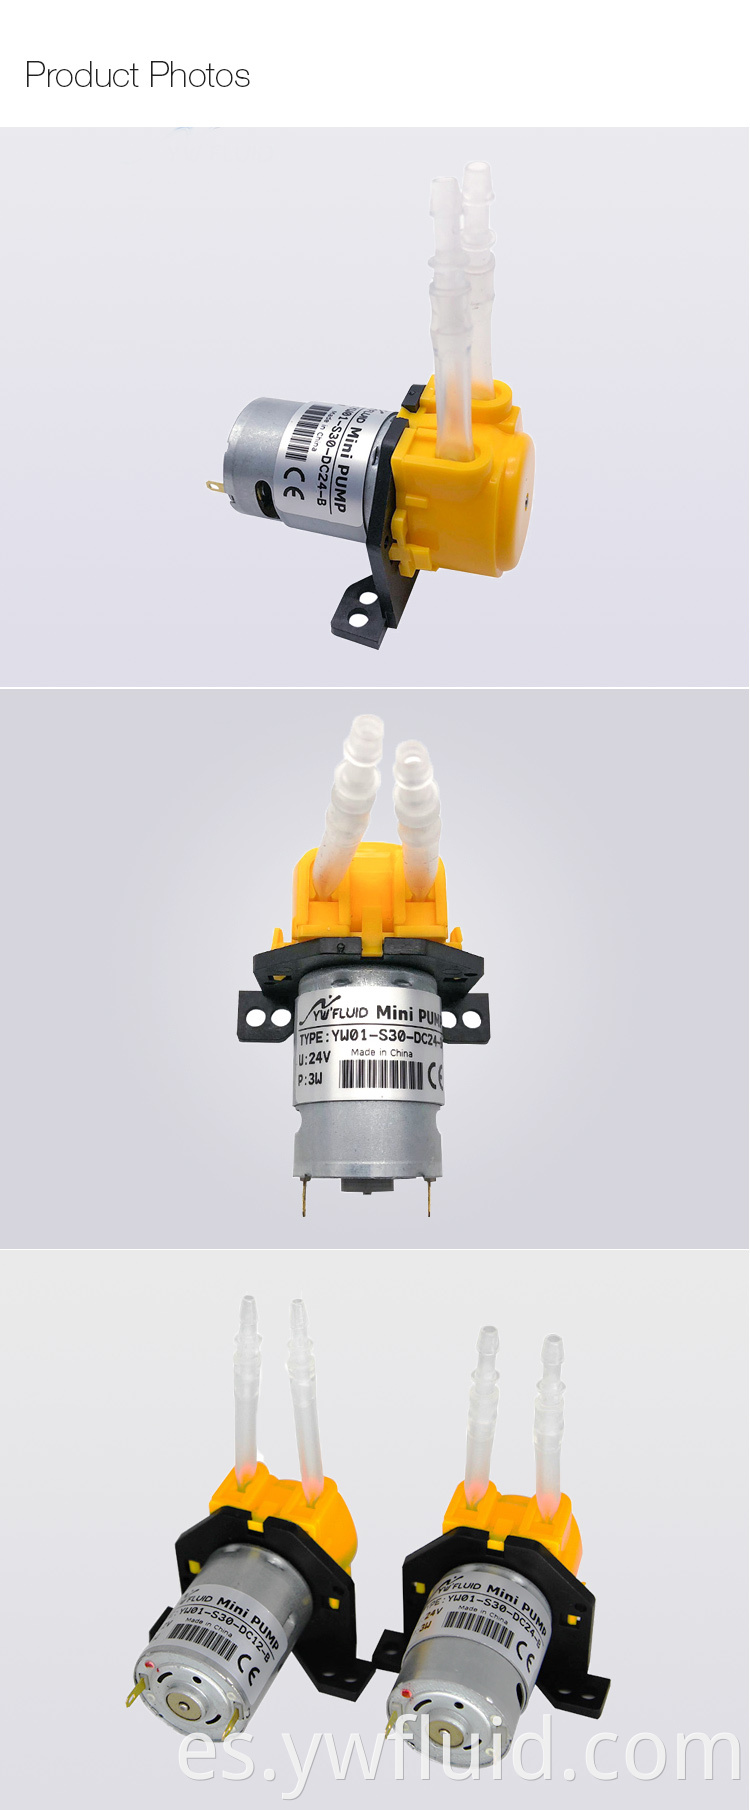 YWfluid Hot Products 12V / 24V Autocebante Laboratorio micro bomba de líquido peristáltica DIY con motor DC utilizado para equipos de laboratorio